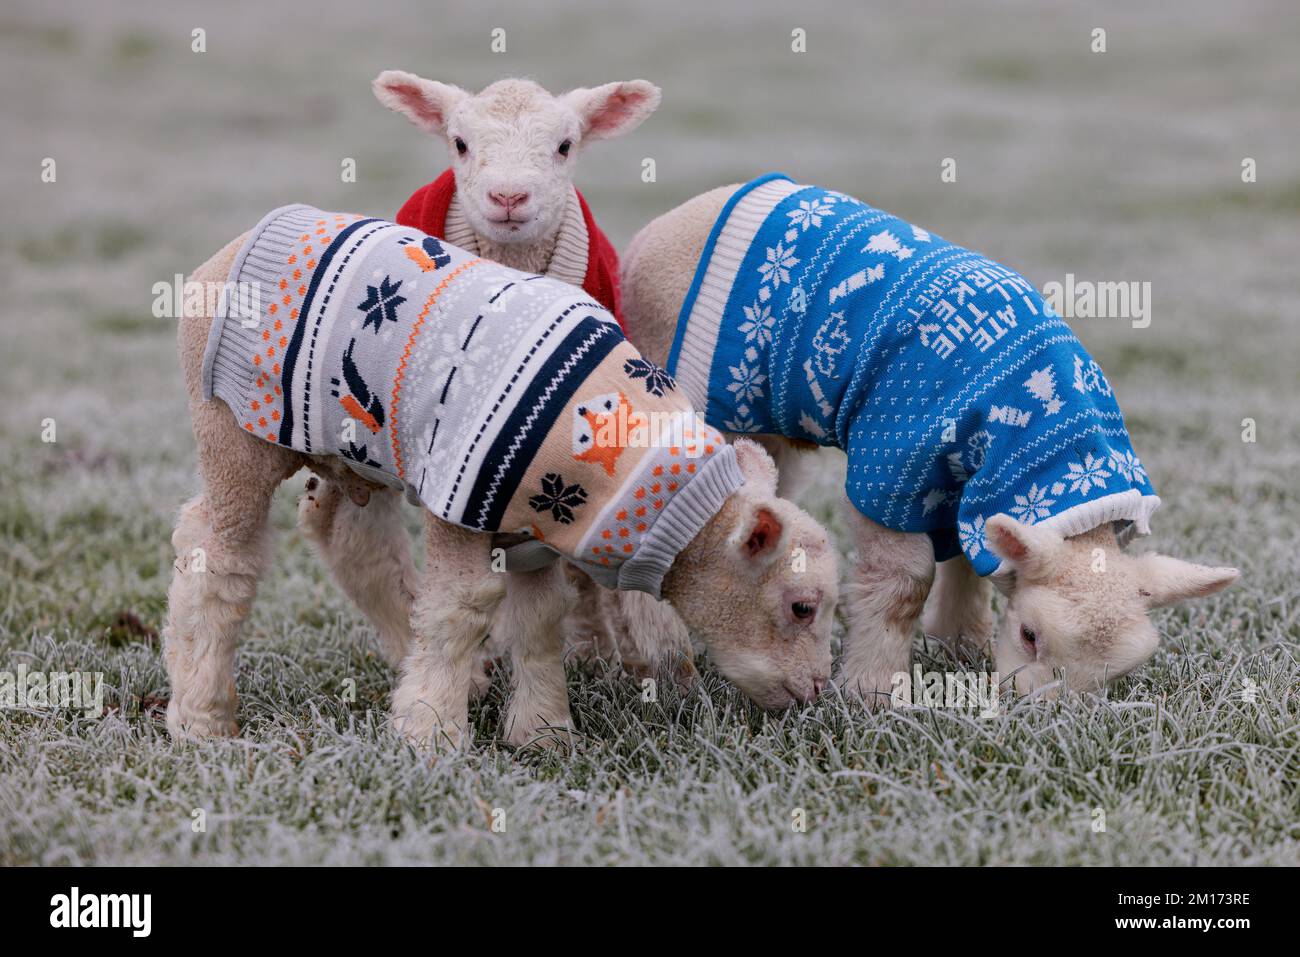 Bocketts Farm in Surrey hanno dato i loro piccoli agnelli Jumpers di Natale per mantenere caldo mentre il freddo e il freddo tempo gelido polverato il ‘Troll of Trondheim’ continua a colpire il Regno Unito. La fattoria si aspetta un certo numero di agnelli questo inverno con il primo essere nato questa settimana. Foto Stock